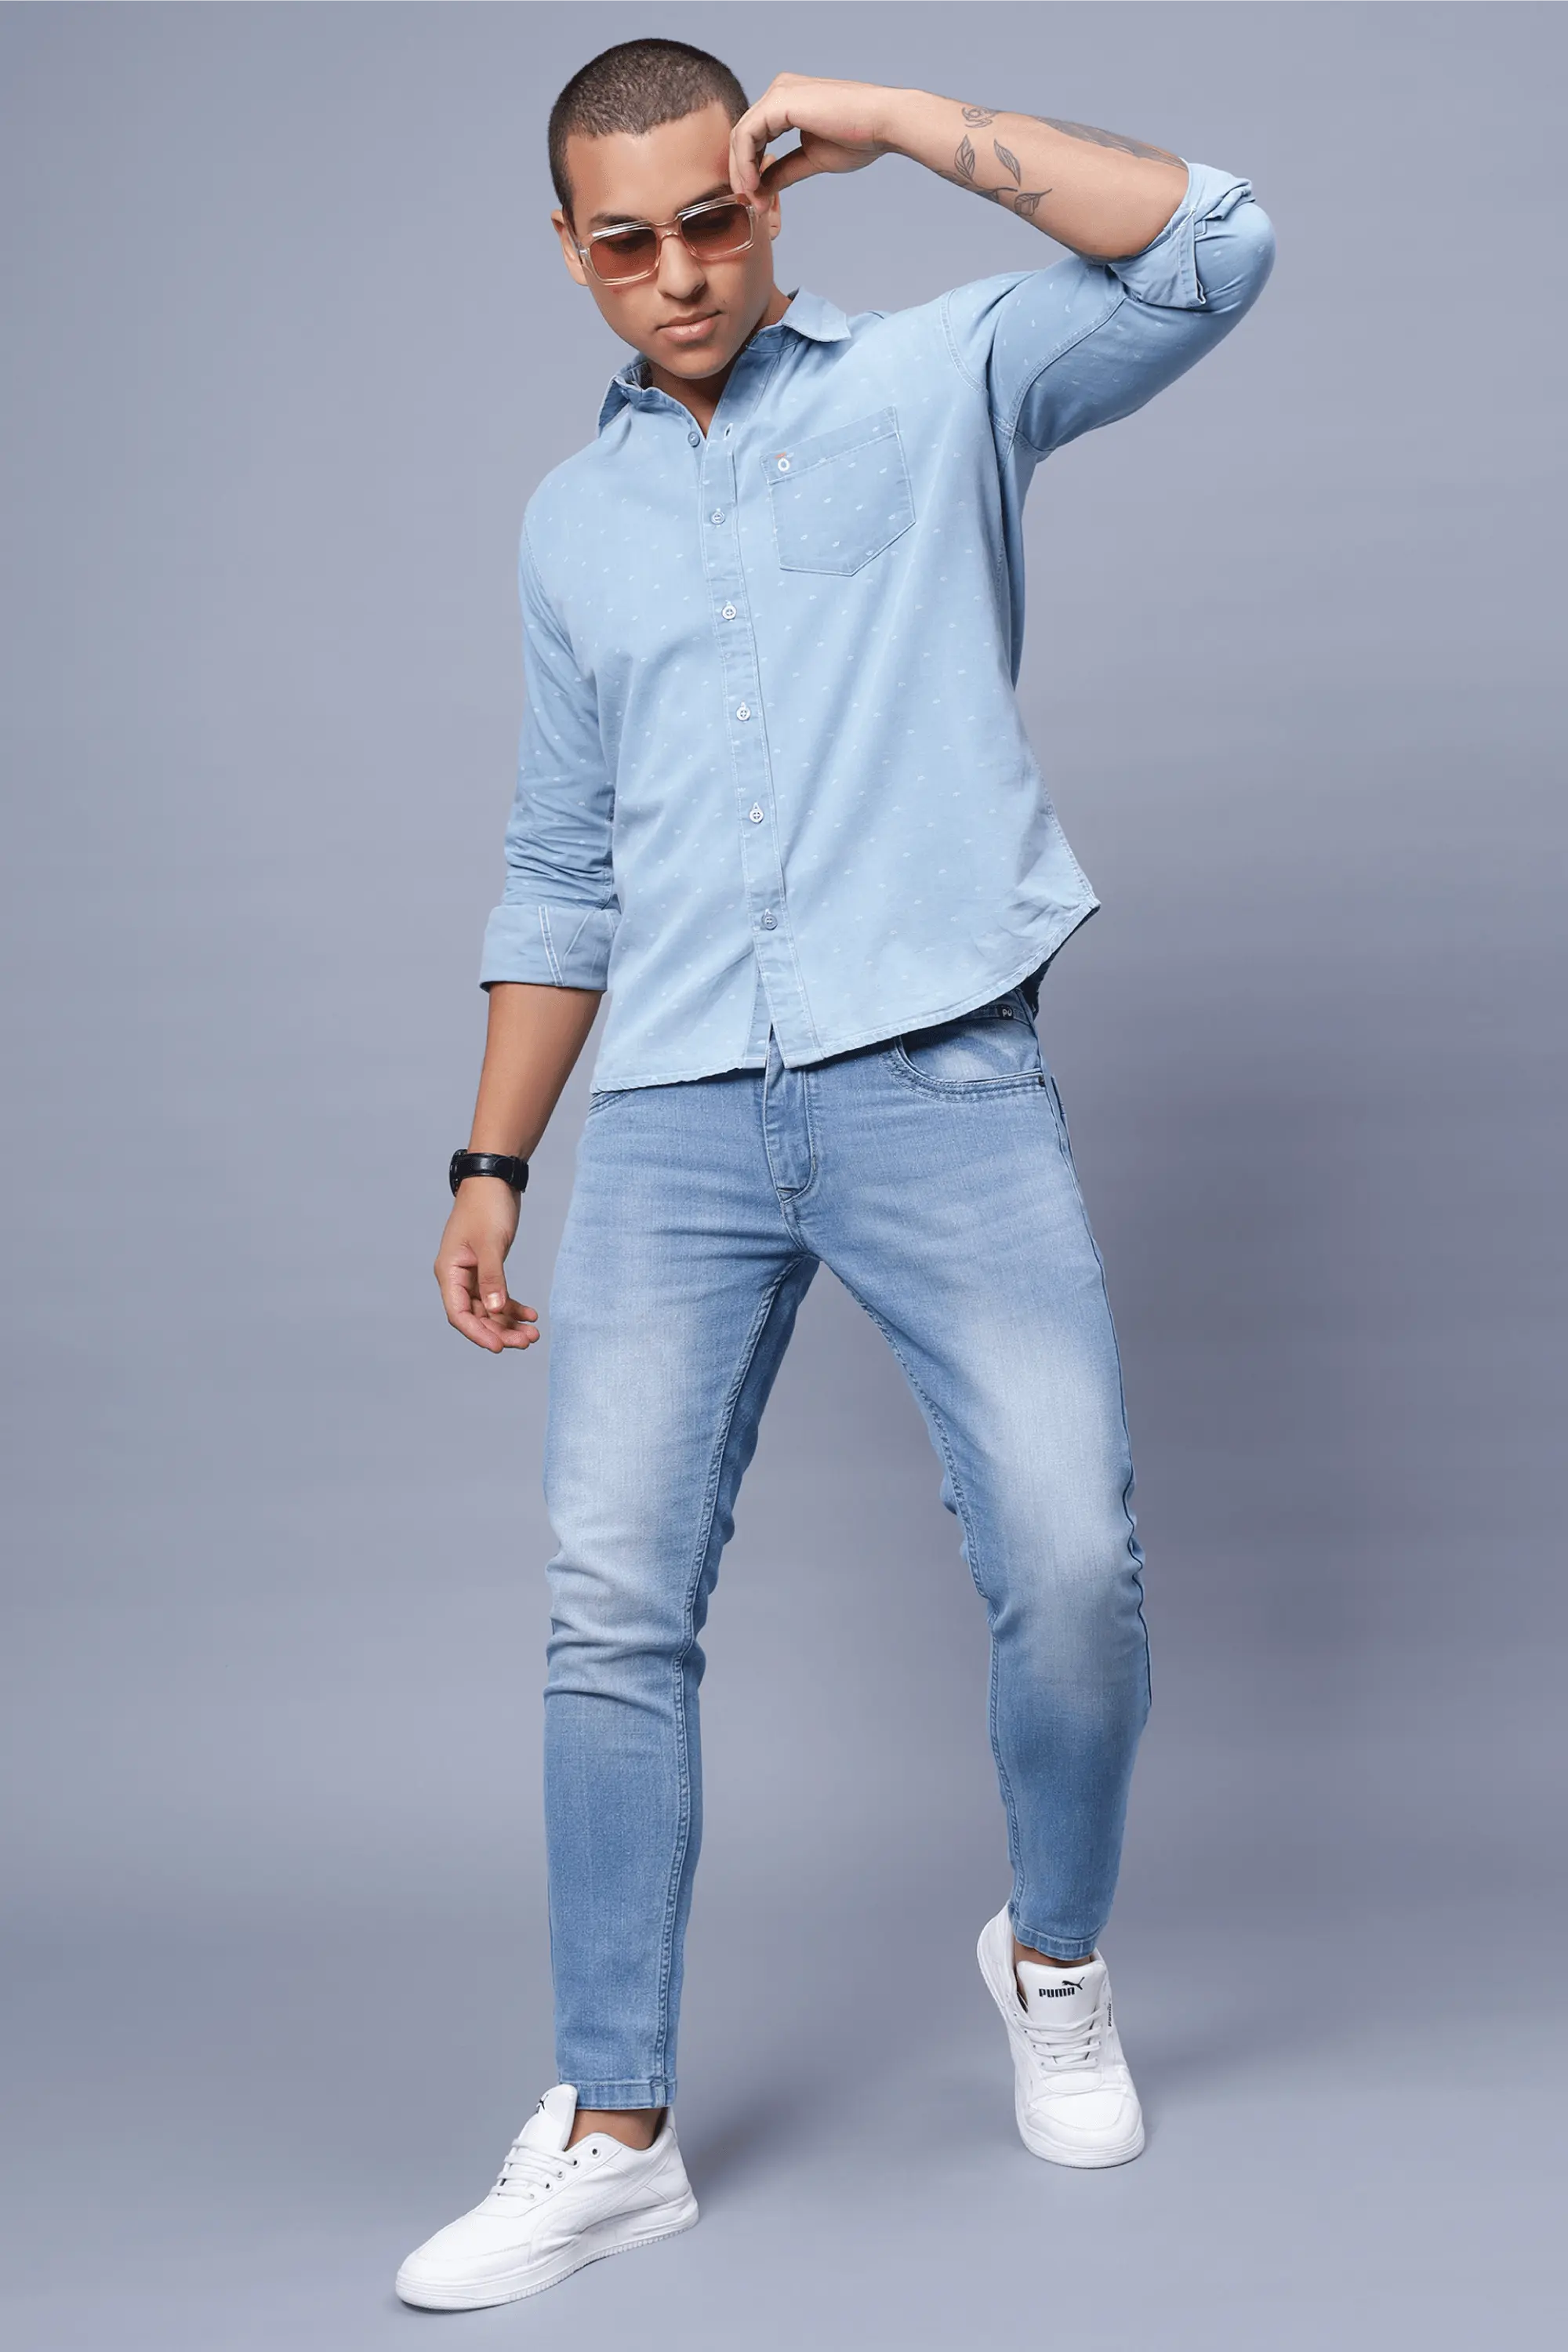 Buy Blue Denim Full Sleeves Shirt for Boys Online at Jack&Jones Junior  |288813102